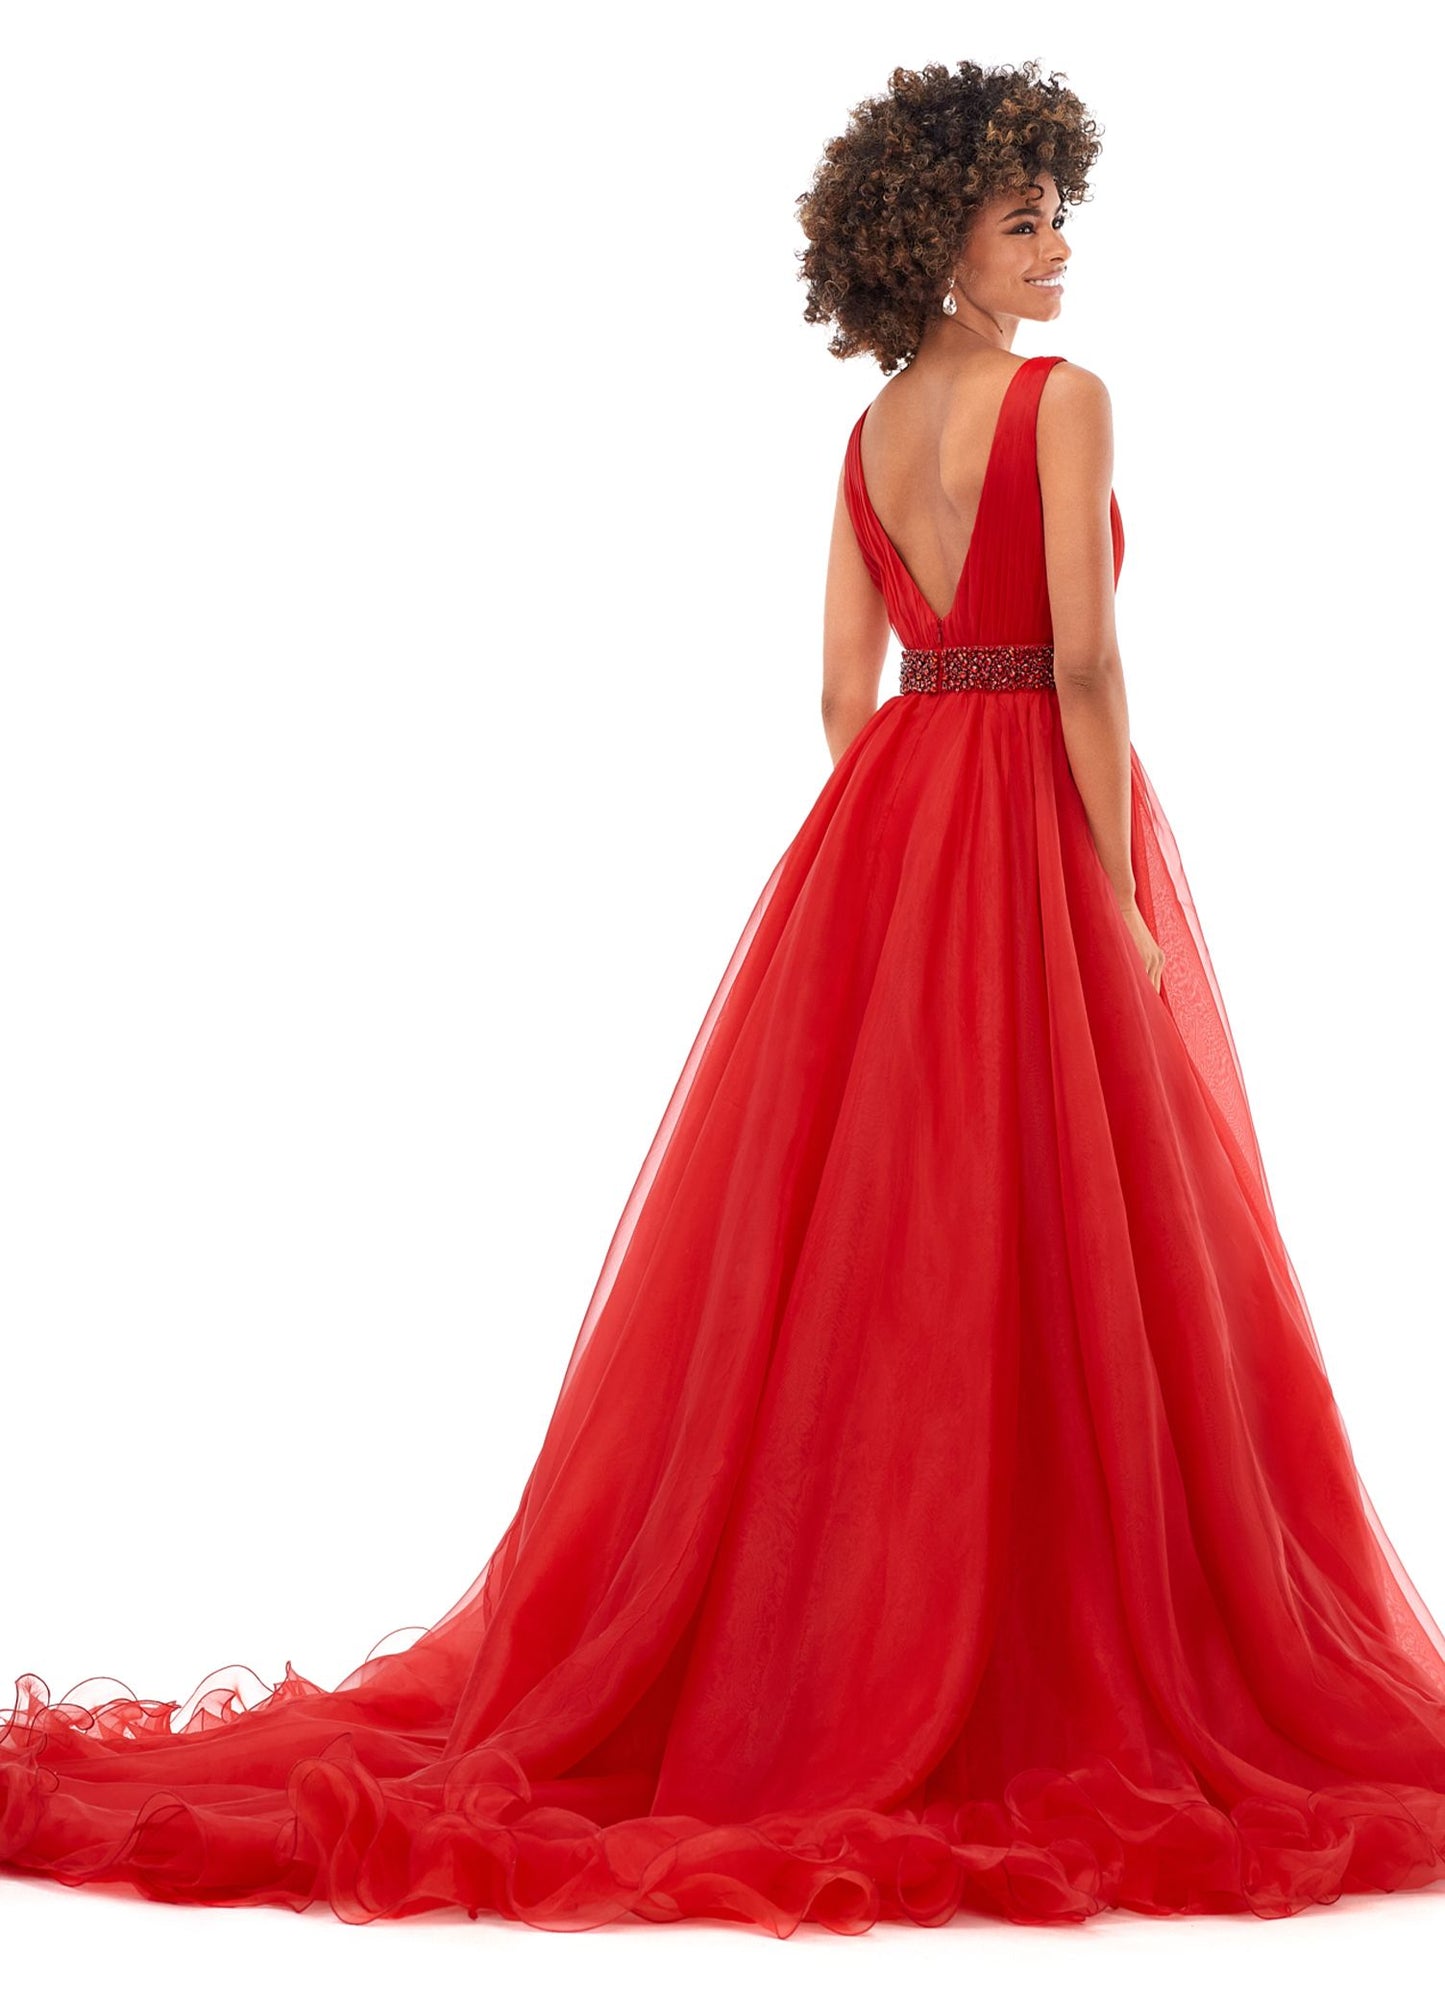 Ashley Lauren 11305 V Neckline Organza Prom Dress Ball Gown